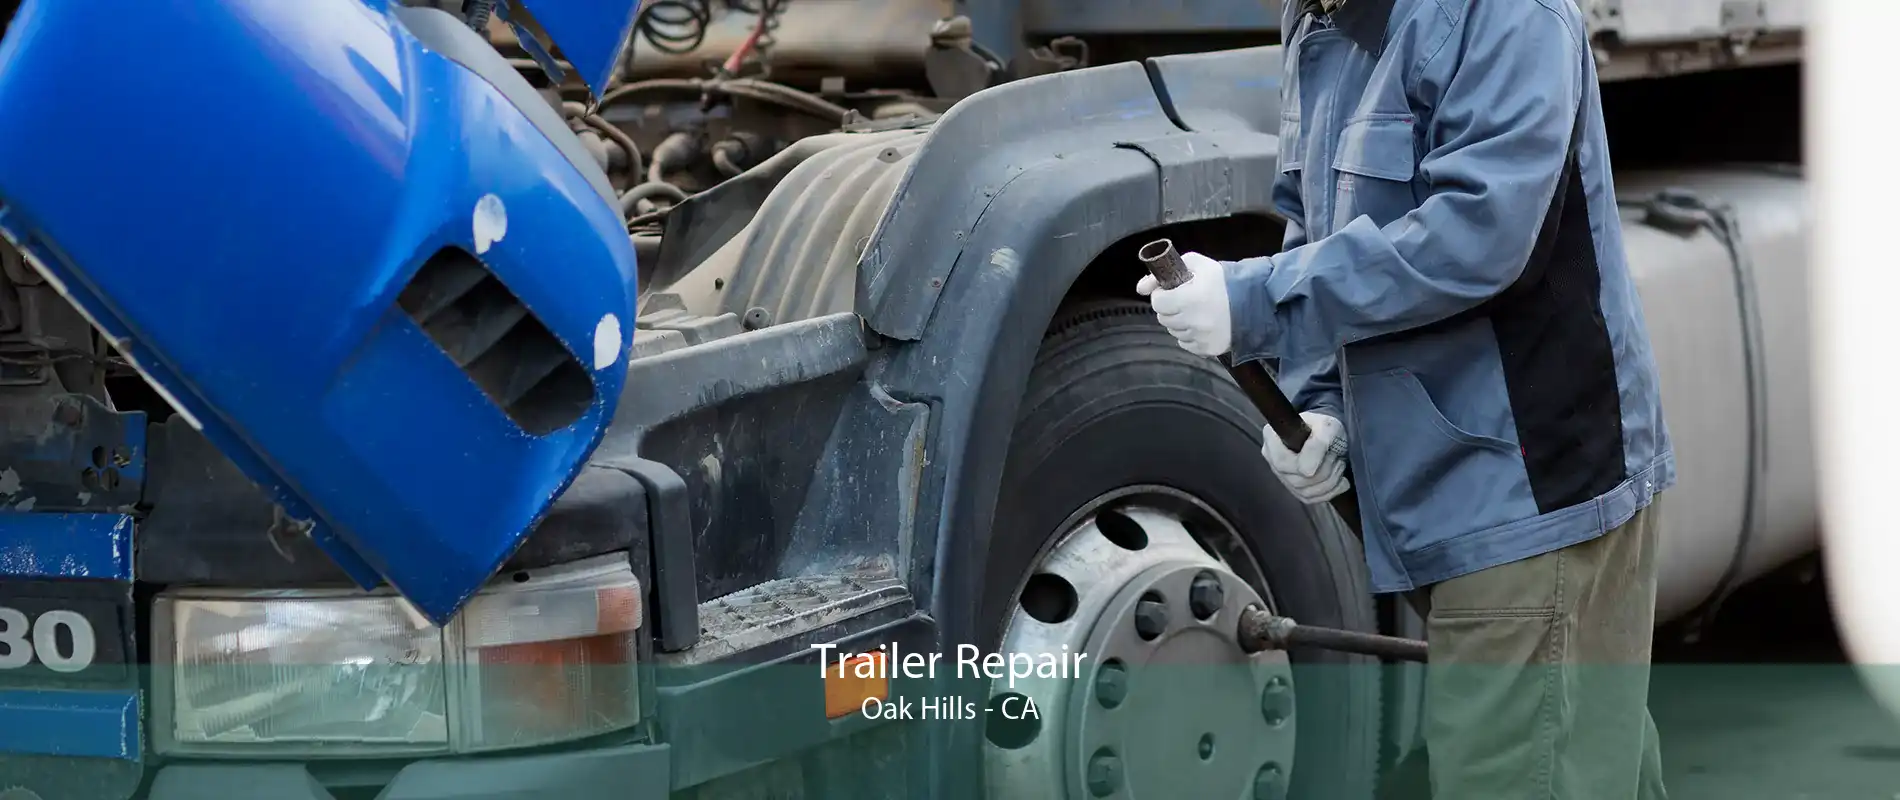 Trailer Repair Oak Hills - CA